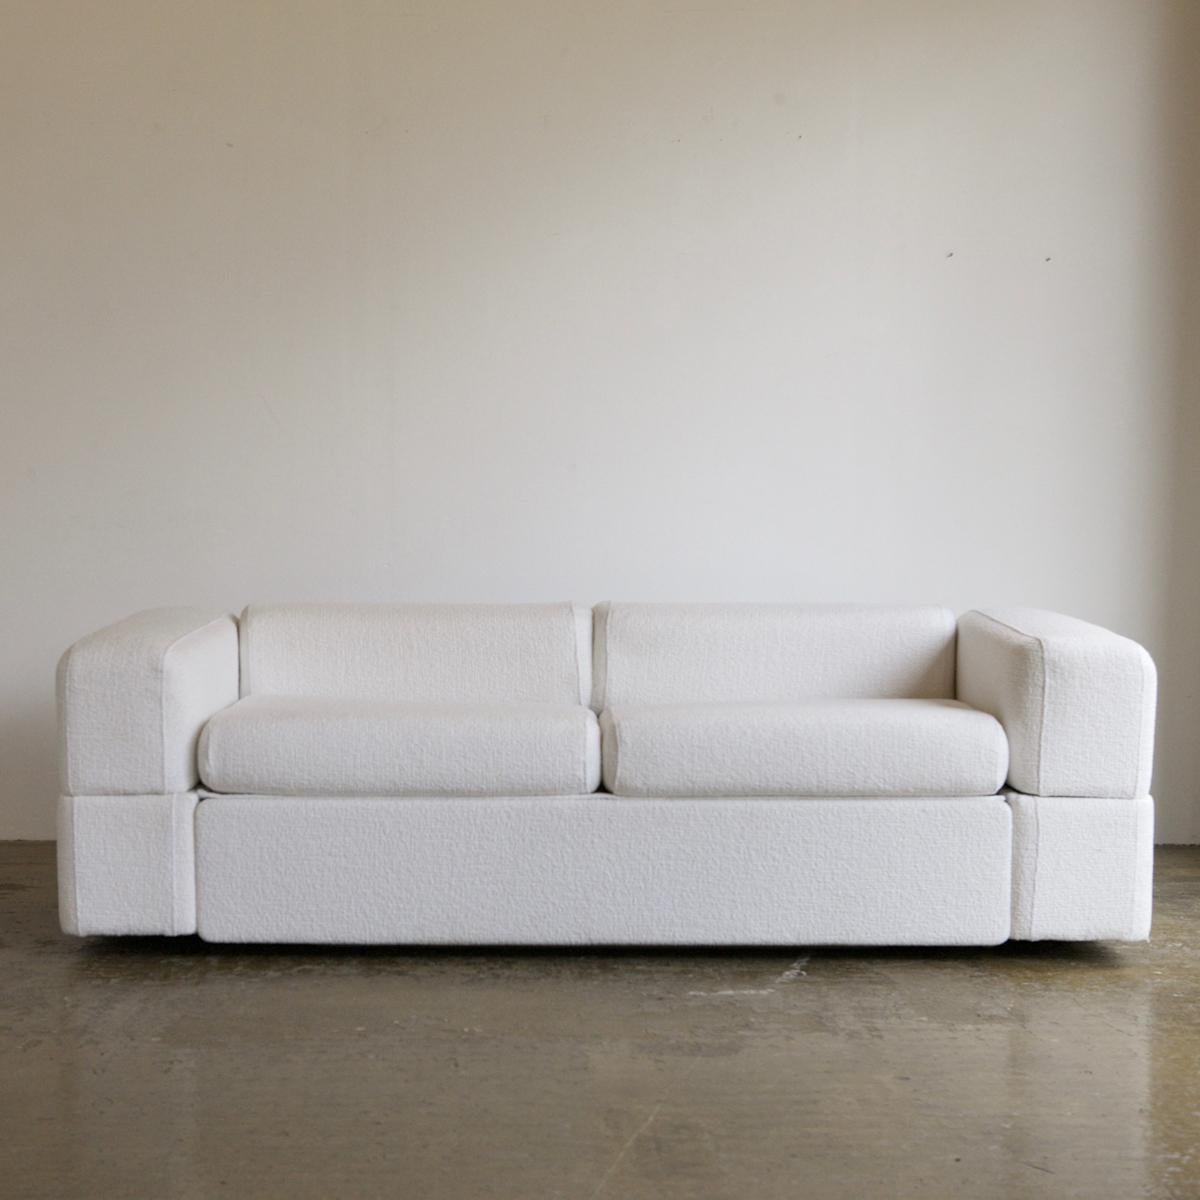 Canapé emblématique de Tito Agnoli pour Cinova, nouvellement revêtu d'une laine texturée tissée blanche. Une pièce compacte et super confortable au design minimaliste. Cette version du canapé-lit Agnoli est rare en ce sens qu'un lit double se